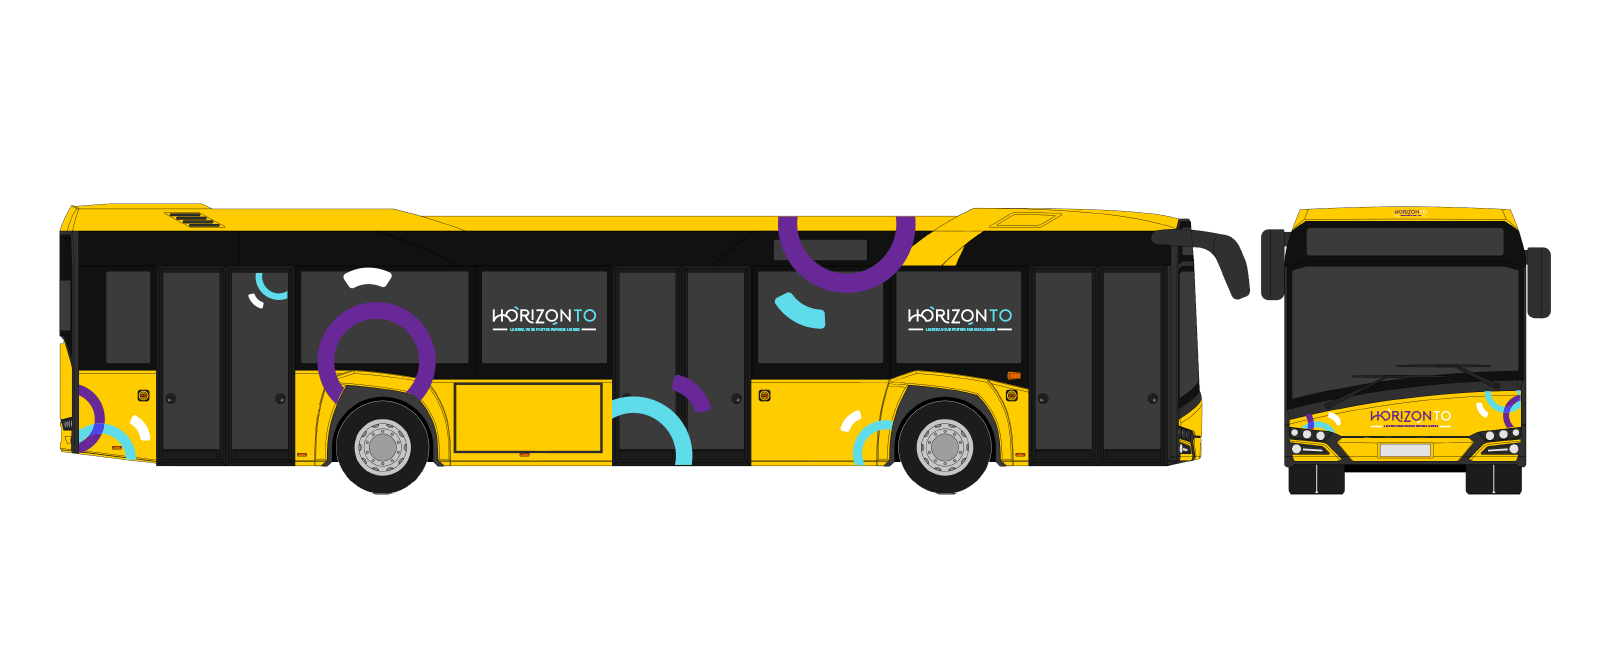 Habillage de bus Kéolis, agence communication à limoges